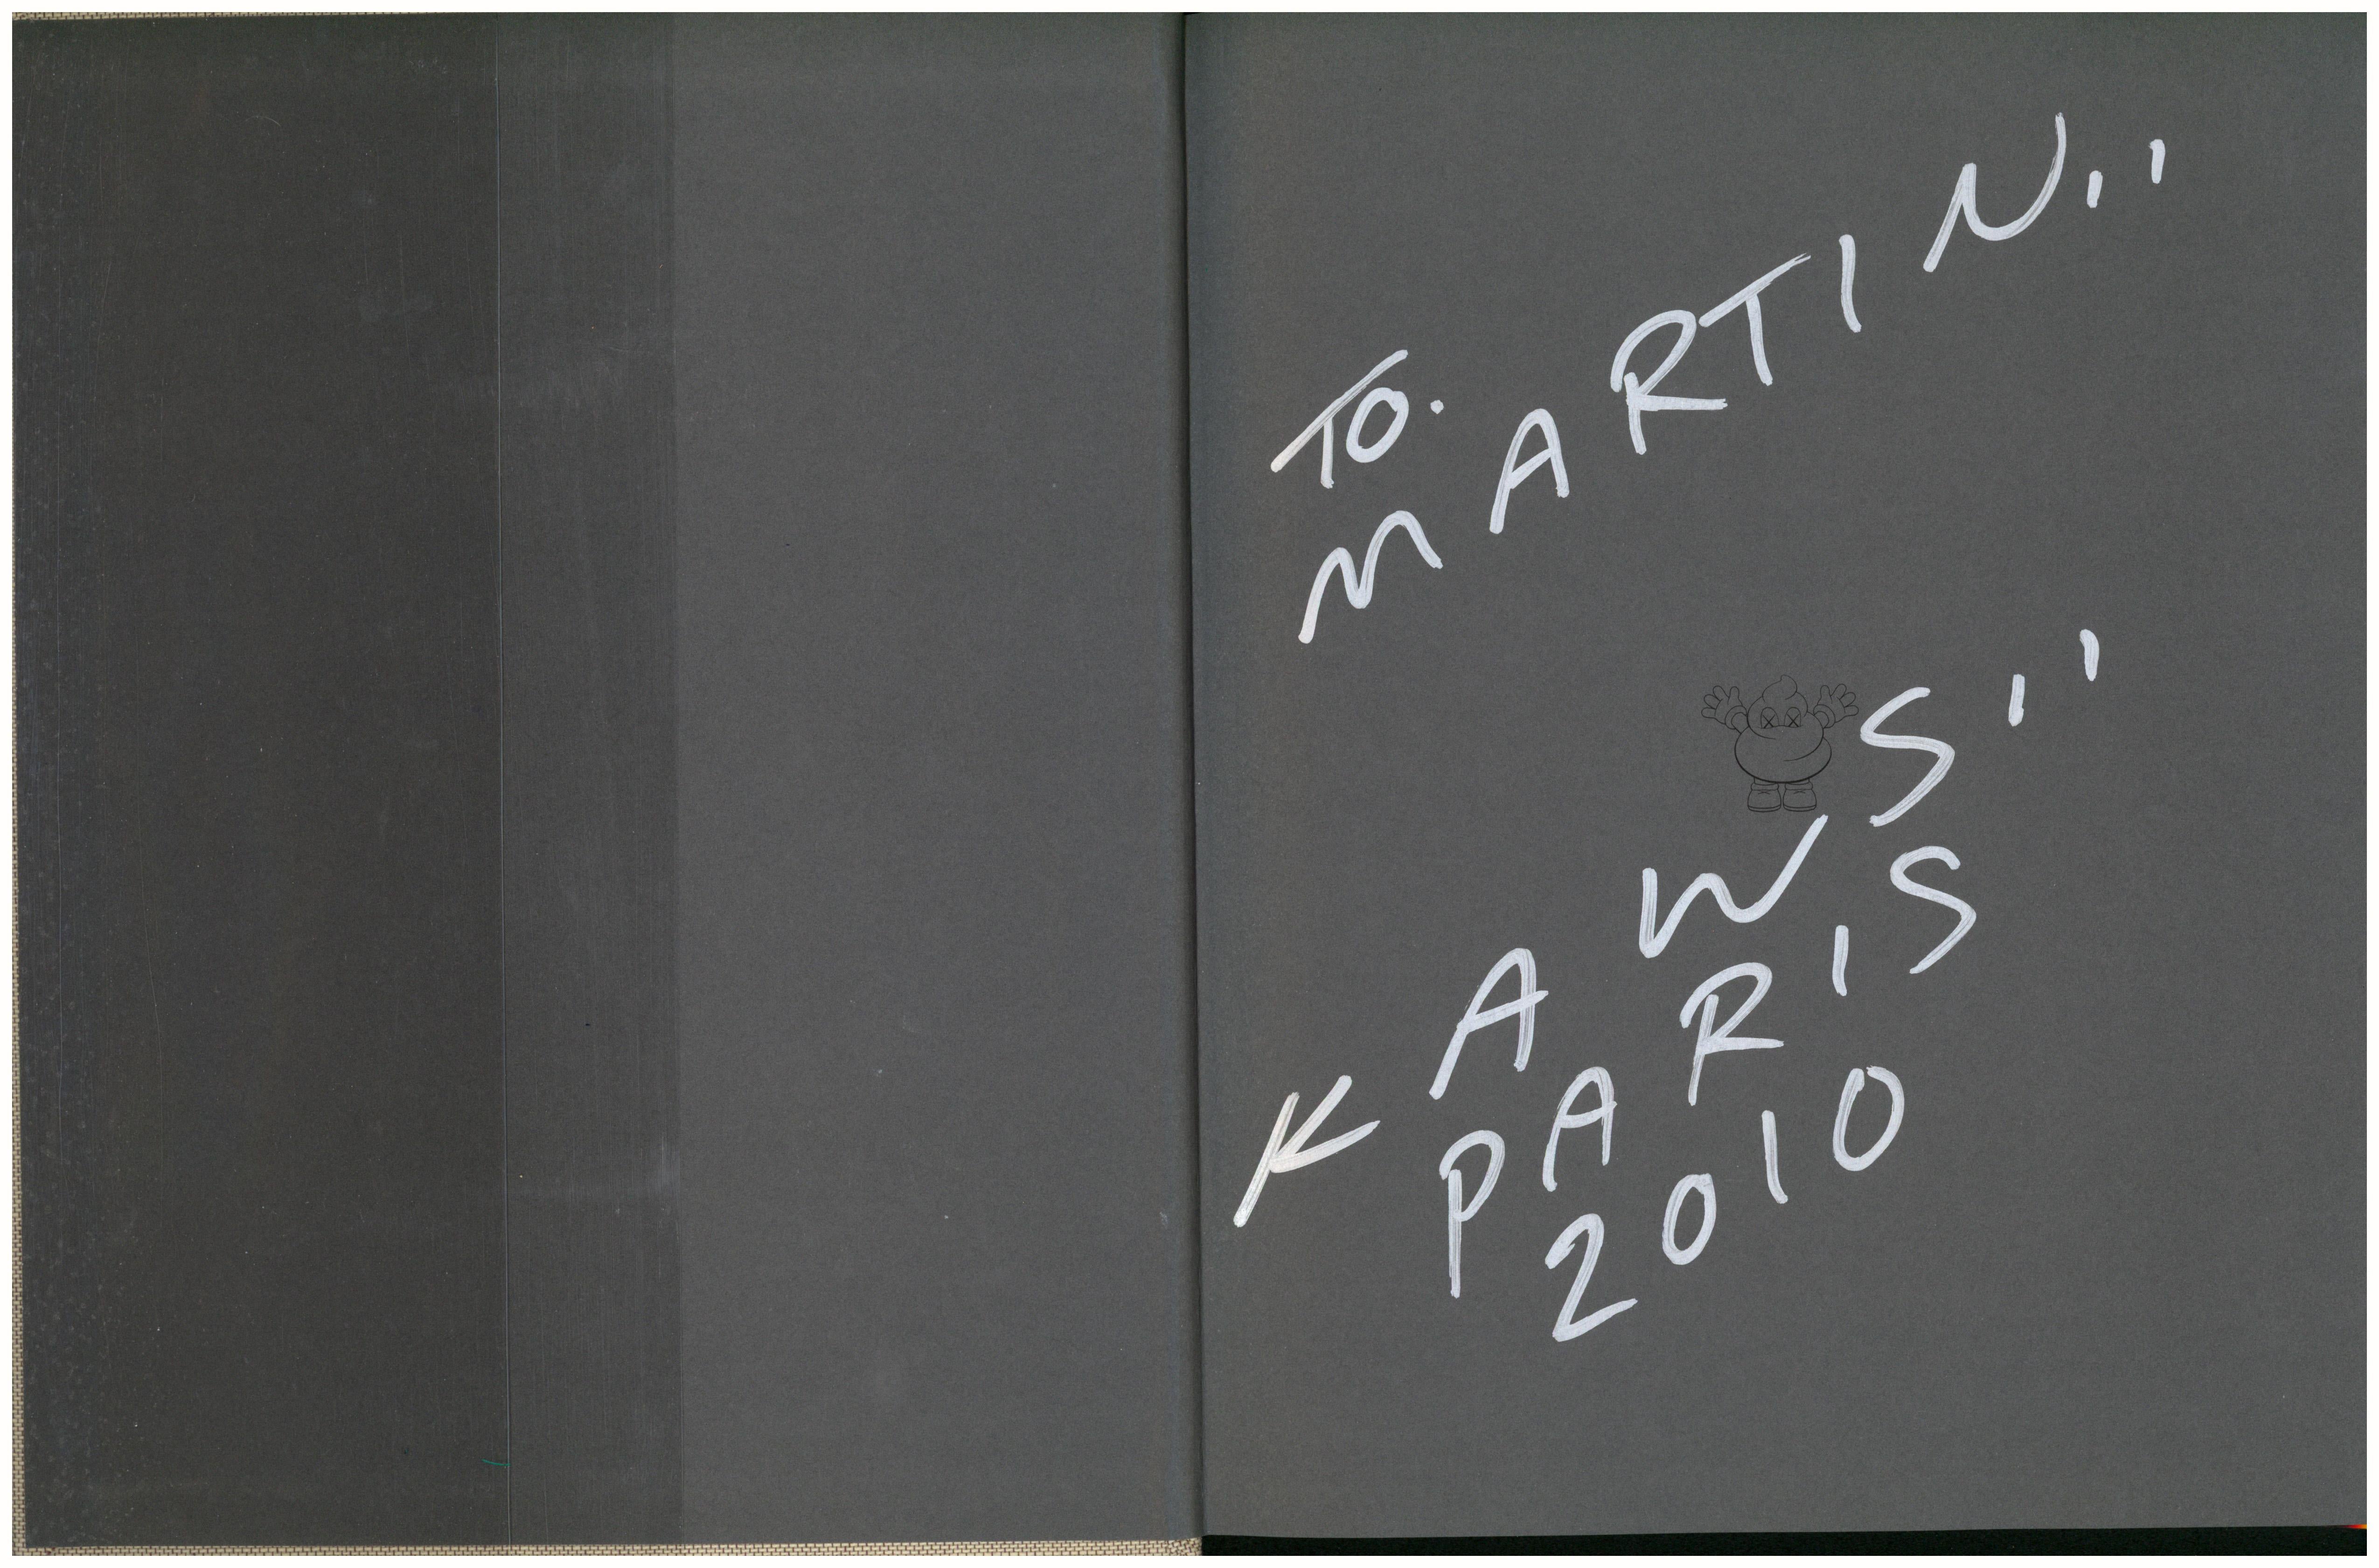 Monographie en édition limitée de KAWS, 2010, signée à la main (Colette) :
Publié avec une rare couverture en lettres bleues conçue par KAWS et exclusive à la légendaire boutique parisienne Colette, dans une édition de 200 exemplaires. Signé et